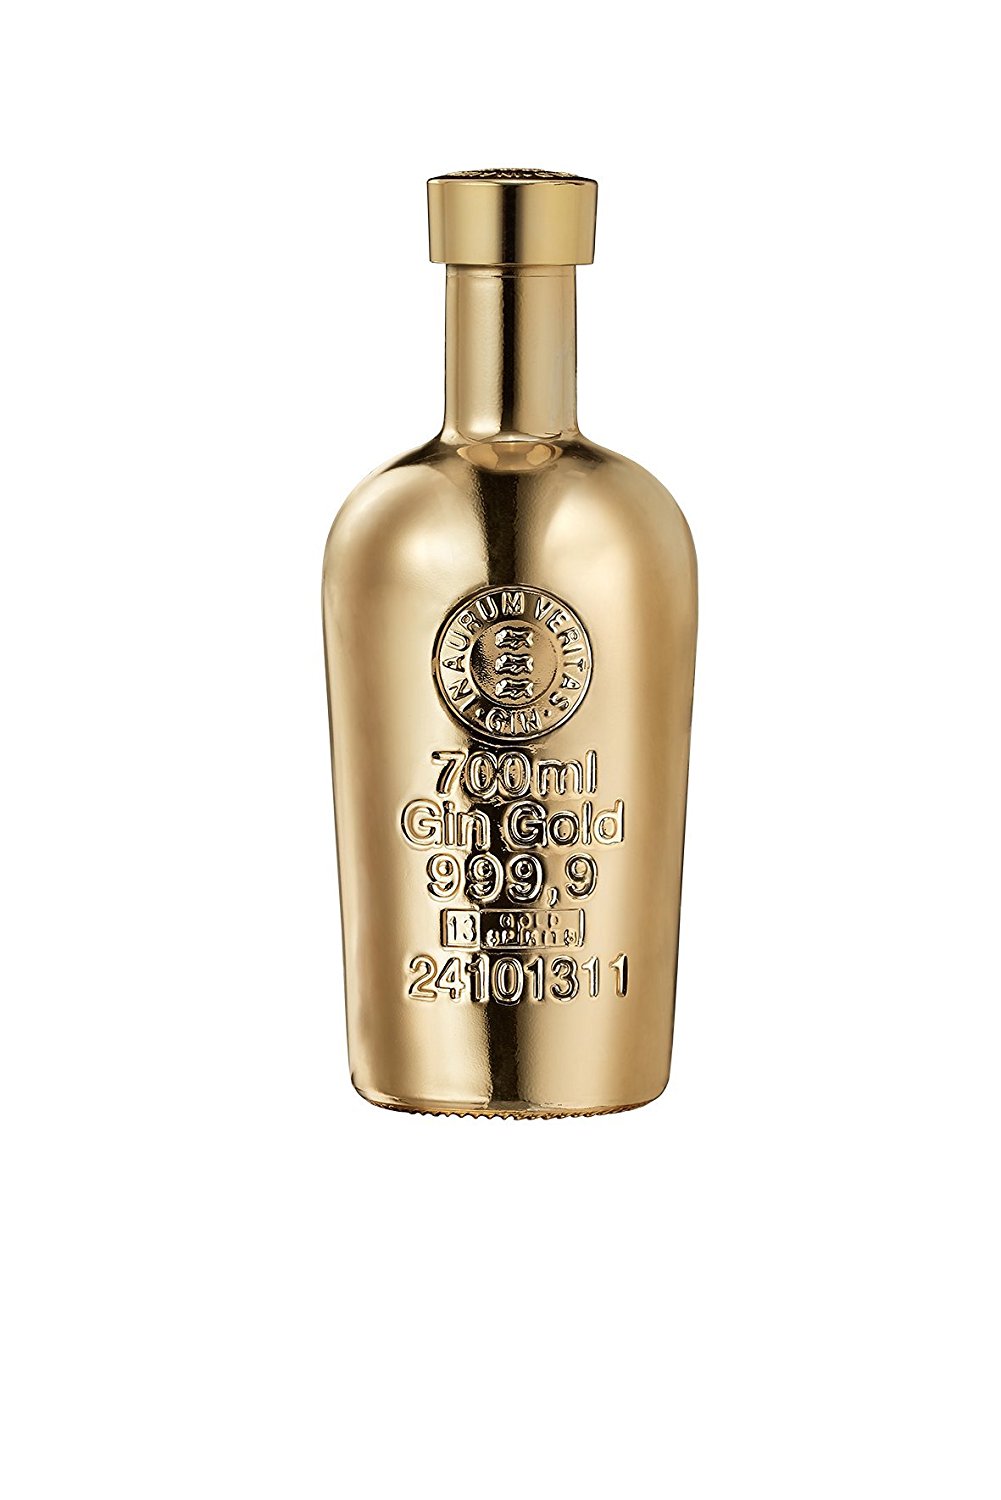 Gold Gin 999.9 Ginebra Premium de Cítricos - Precio mínimo histórico